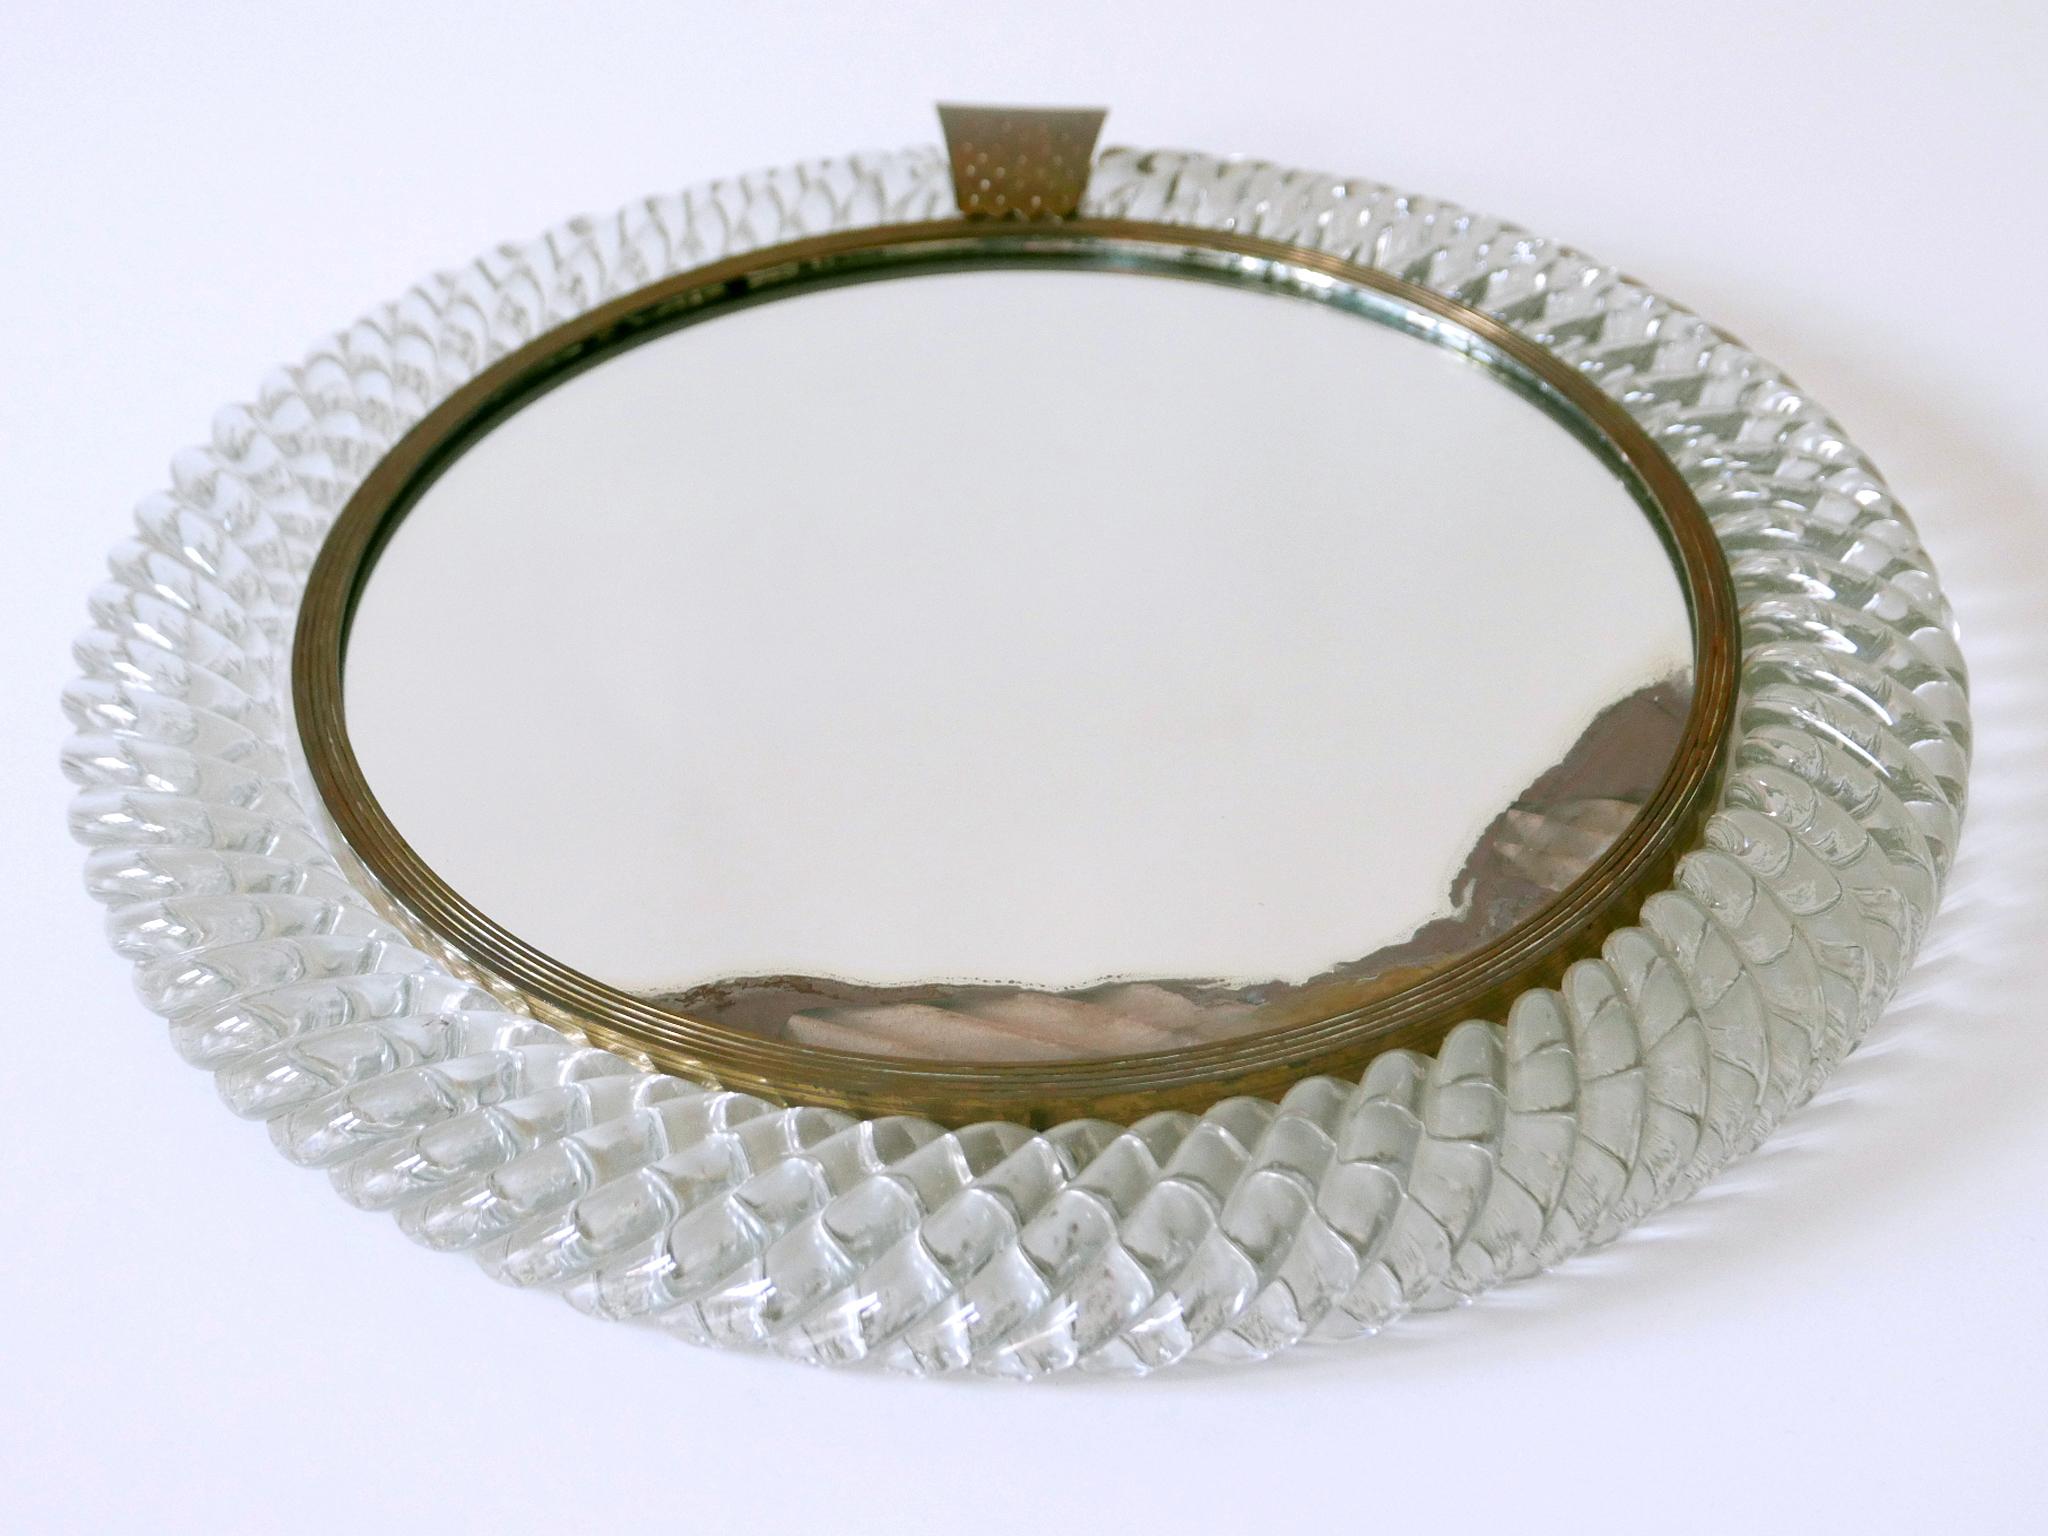 Mid-20th Century Elegant Murano Glass Treccia Wall Mirror by Carlo Scarpa for Venini Italy 1950s For Sale